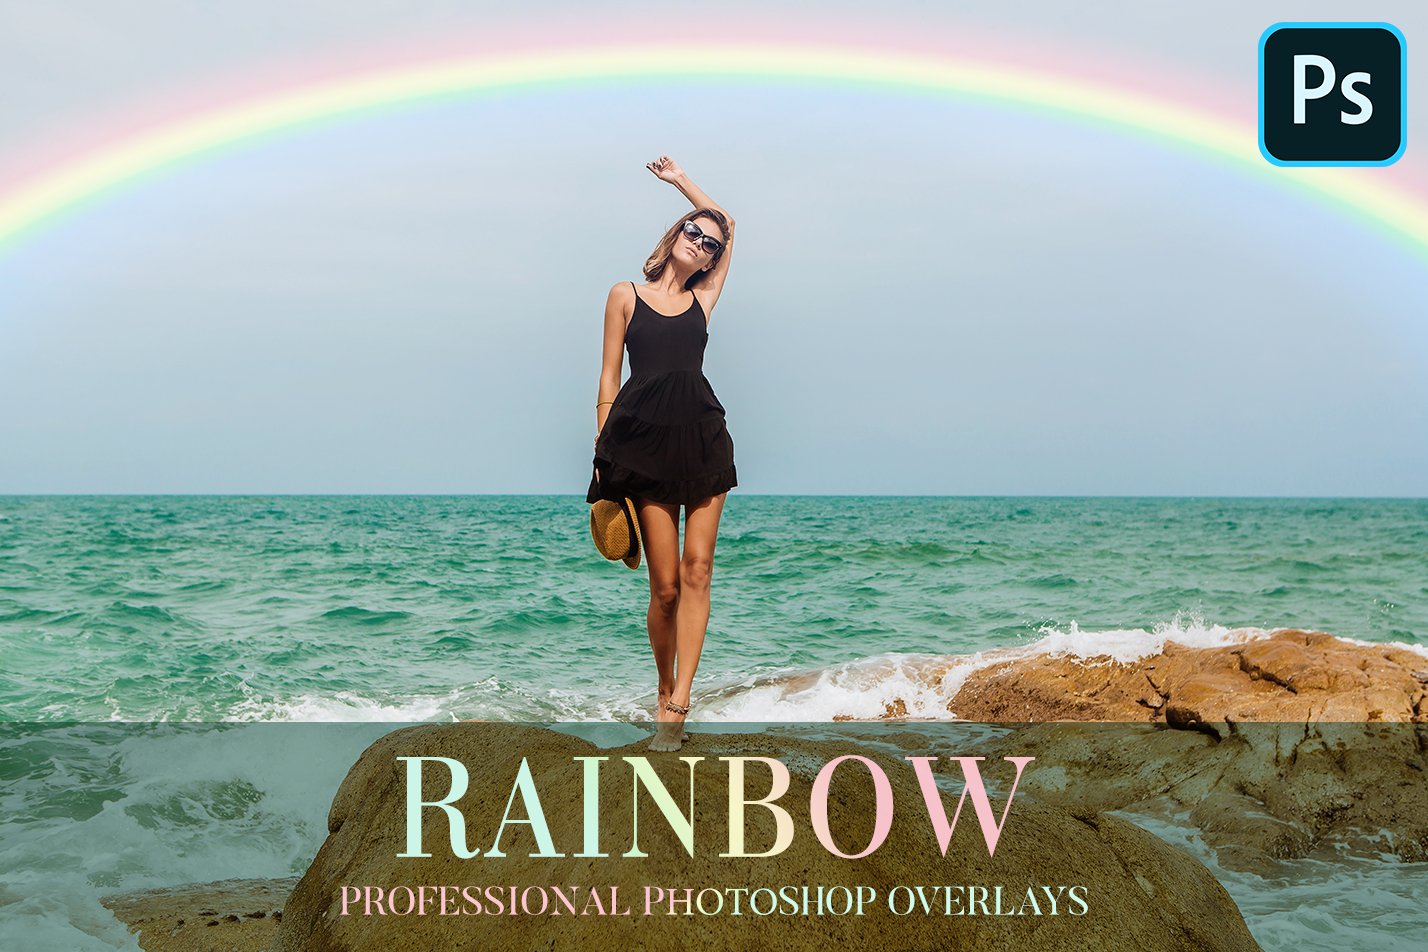 Rainbow Overlays Photoshopcover image.